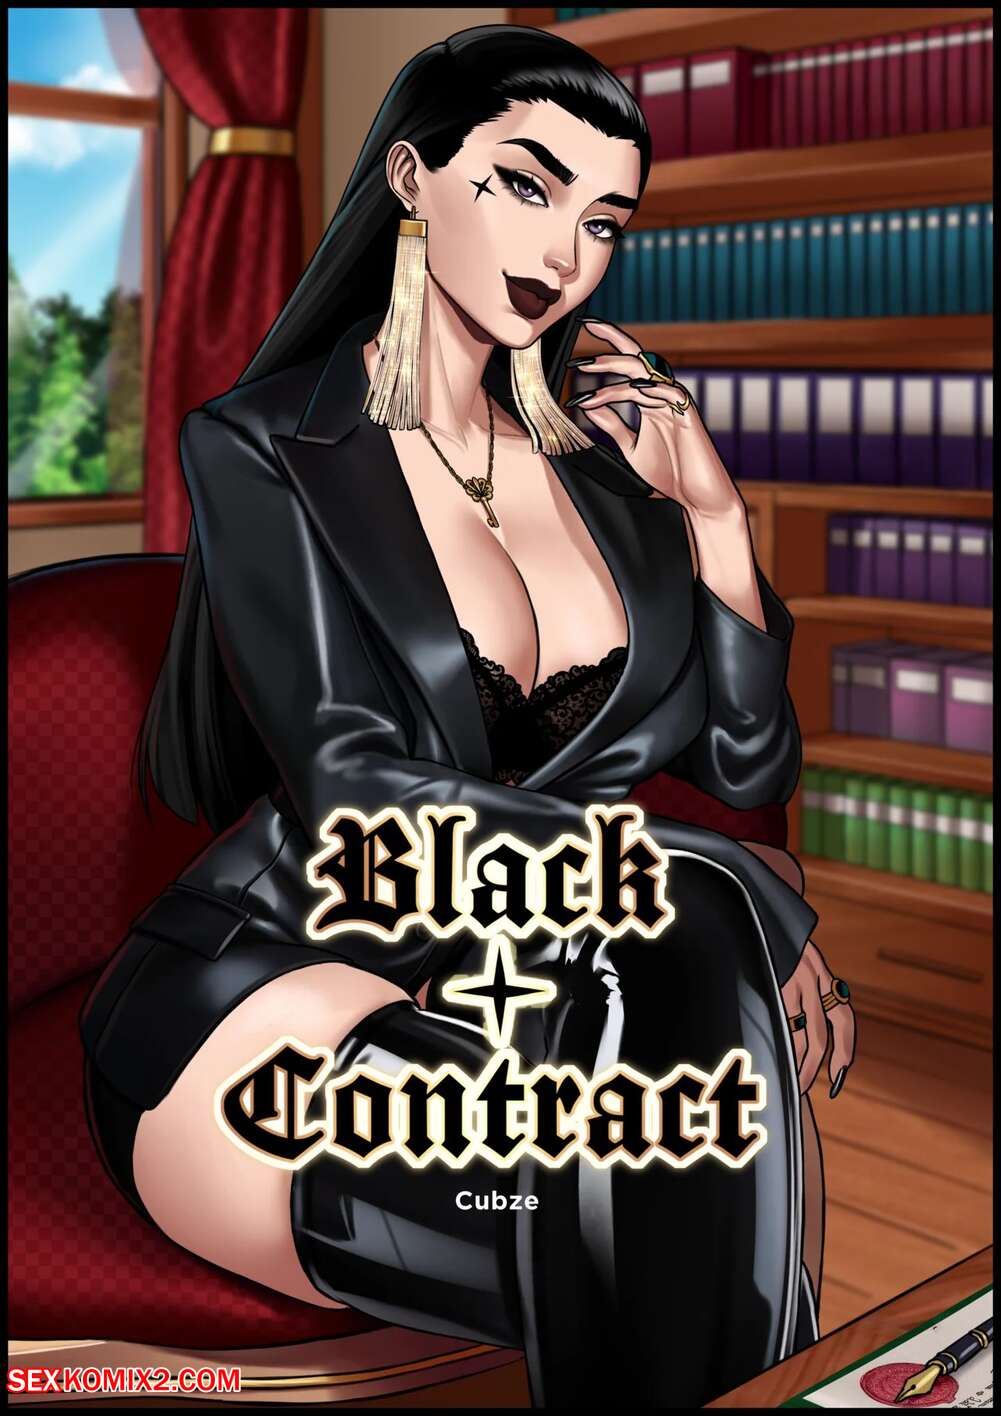 Black lady porn comics